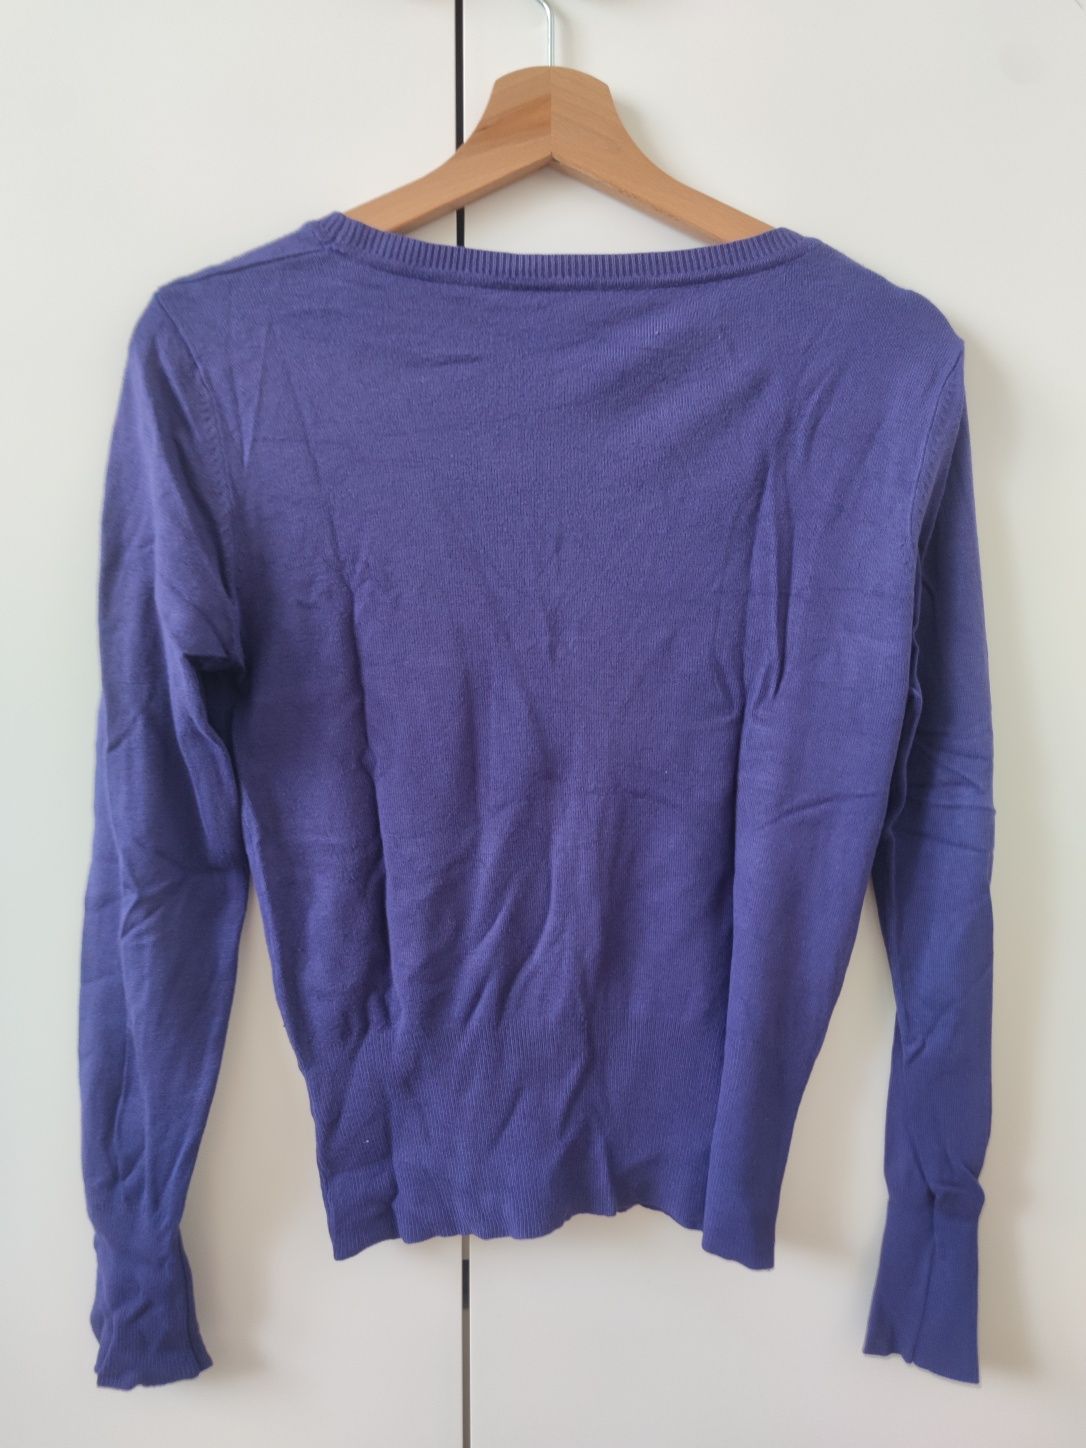 Sweter sweterek fioletowy jedwab bawełna wiskoza S/M 36/38